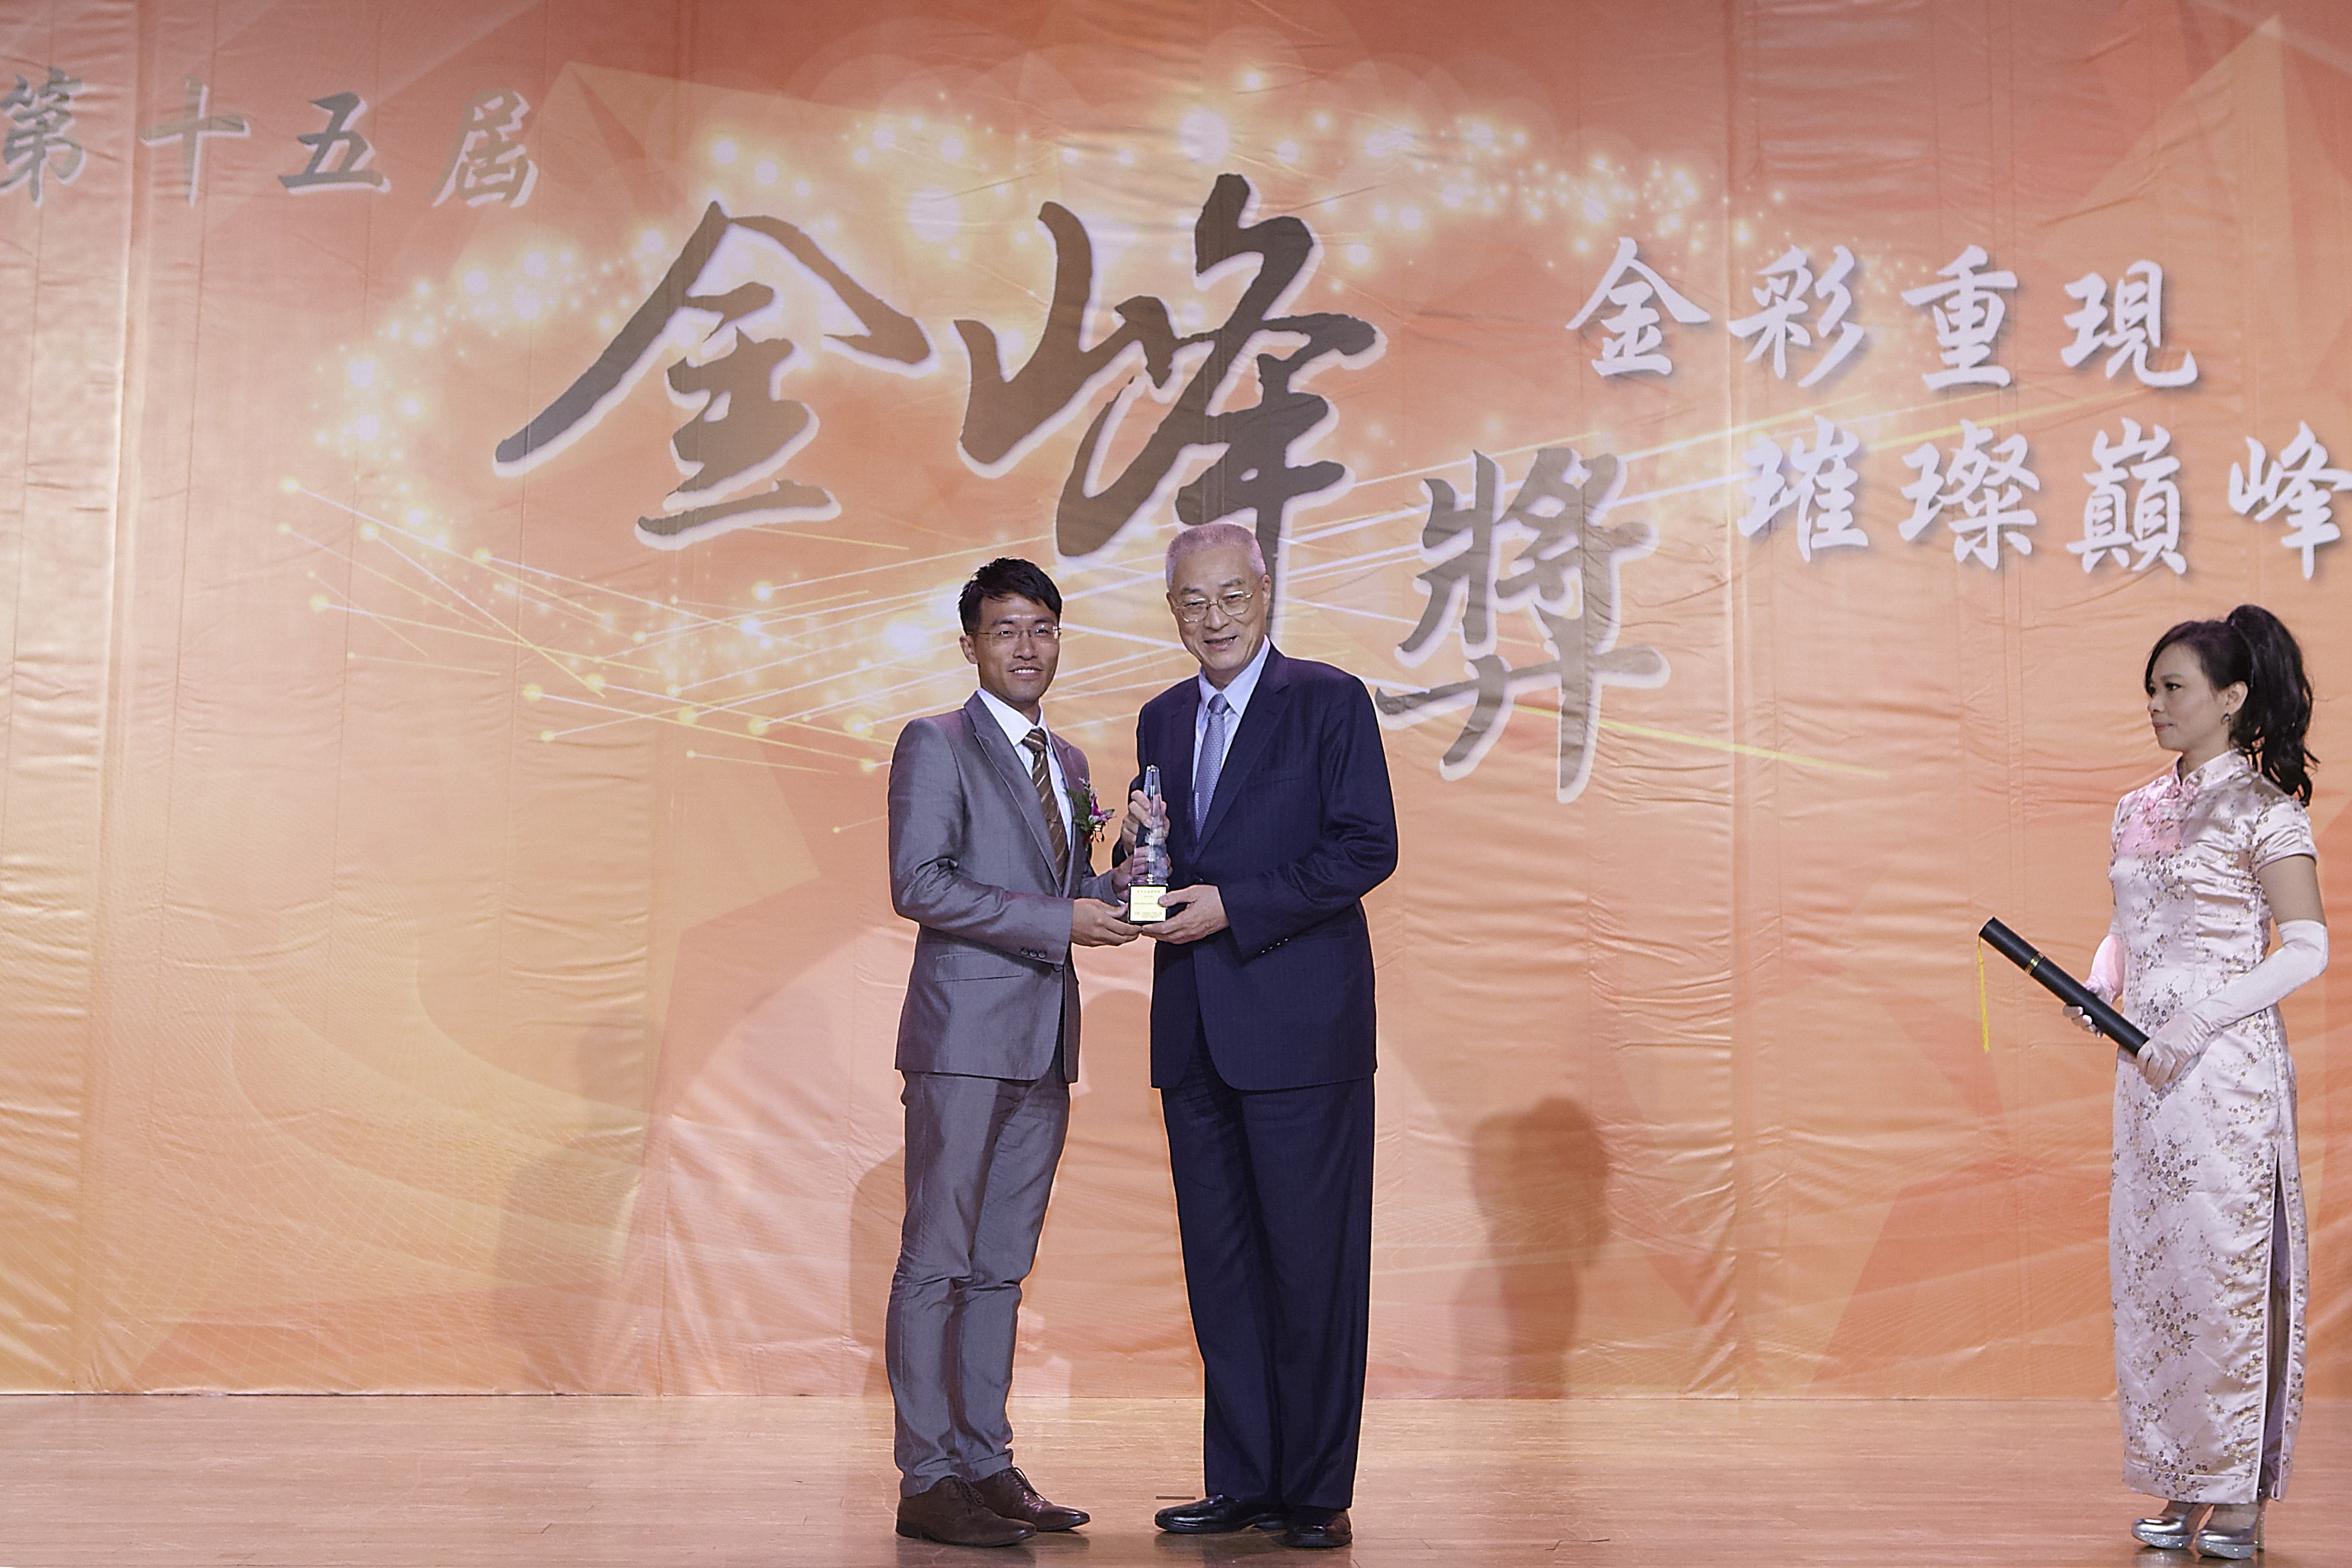 法博思陳偉志總監榮獲金峰獎並與吳敦義副總統合照